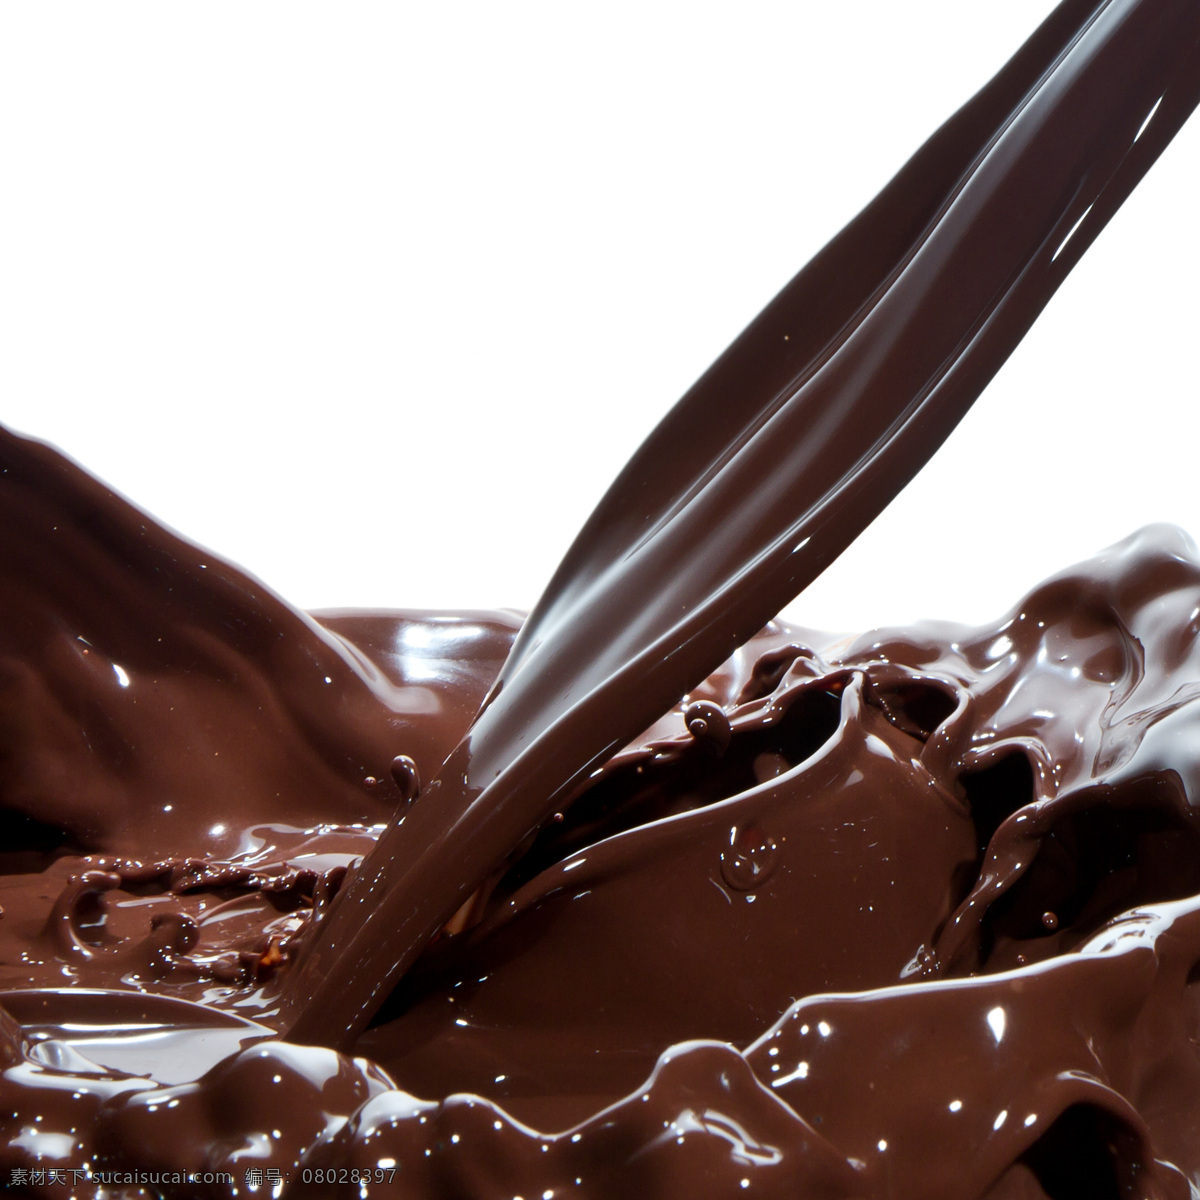 巧克力 巧克力酱 丝滑 美食 食品 朱古力 诱人的巧克力 情人节美食 咖啡 西餐美食 餐饮美食 生活百科